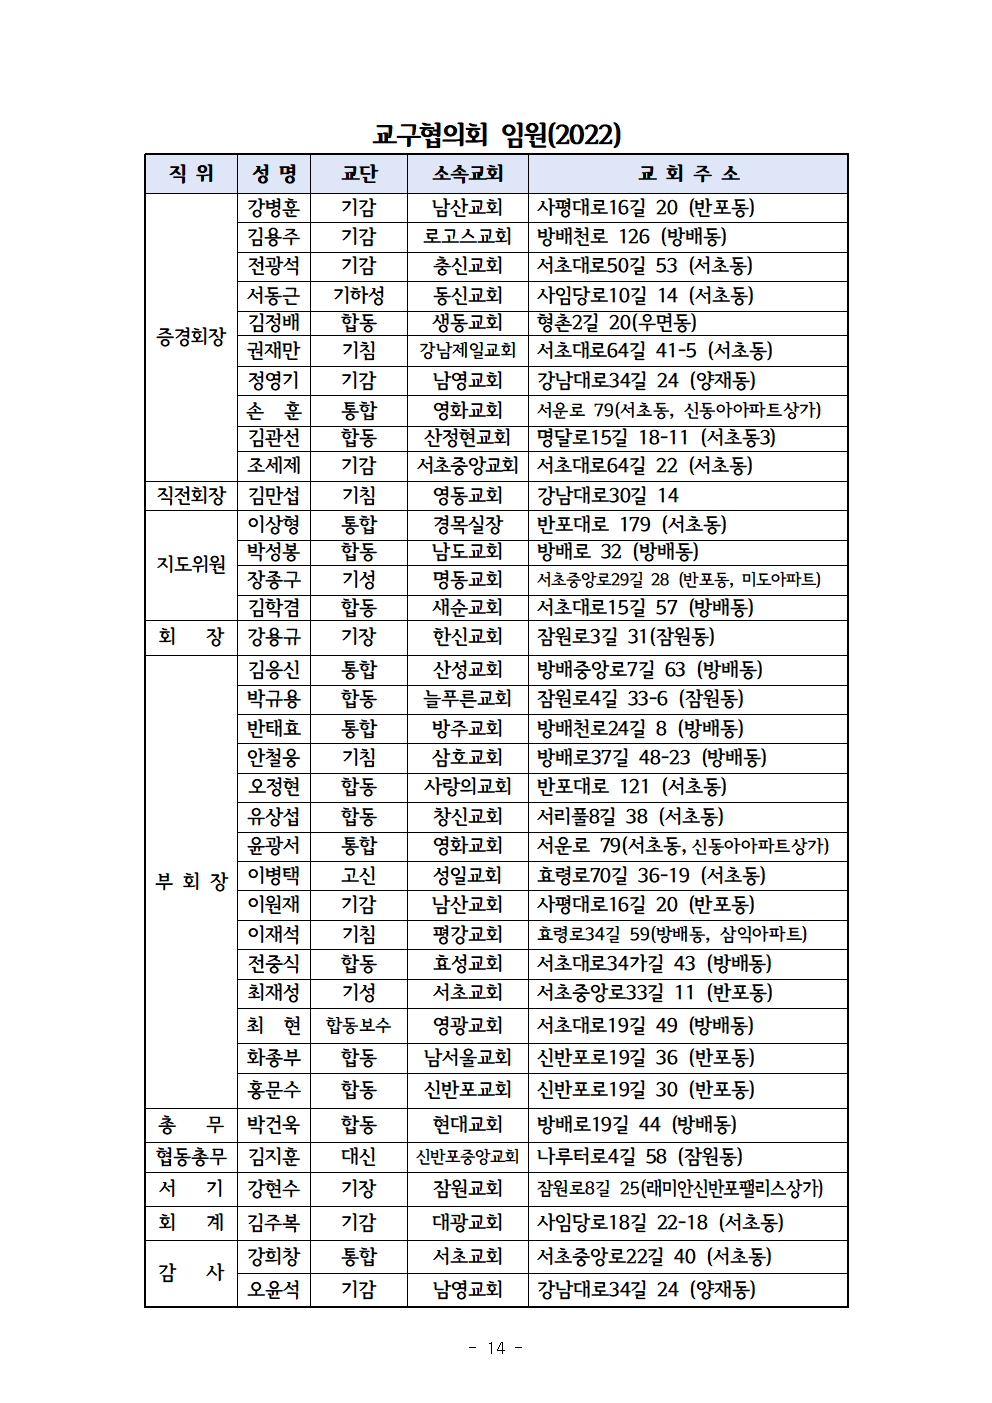 2022회기 서초교구협의회 정기총회자료(12.13.)_홈페이지015.png